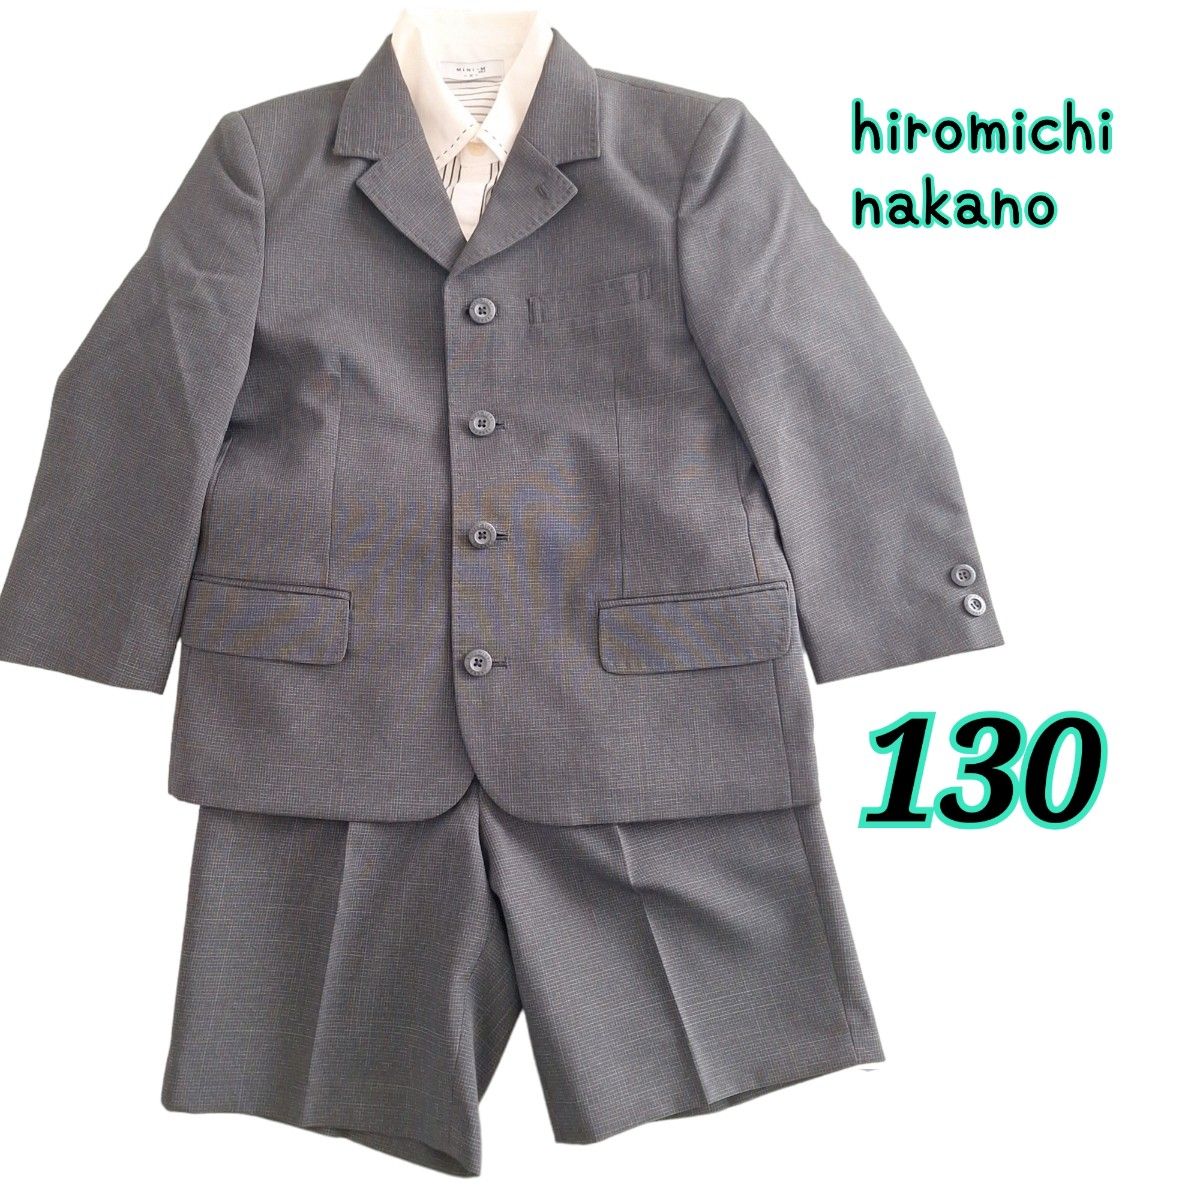 hiromichi nakano ヒロミチナカノキッズ セレモニースーツ シャツ3点